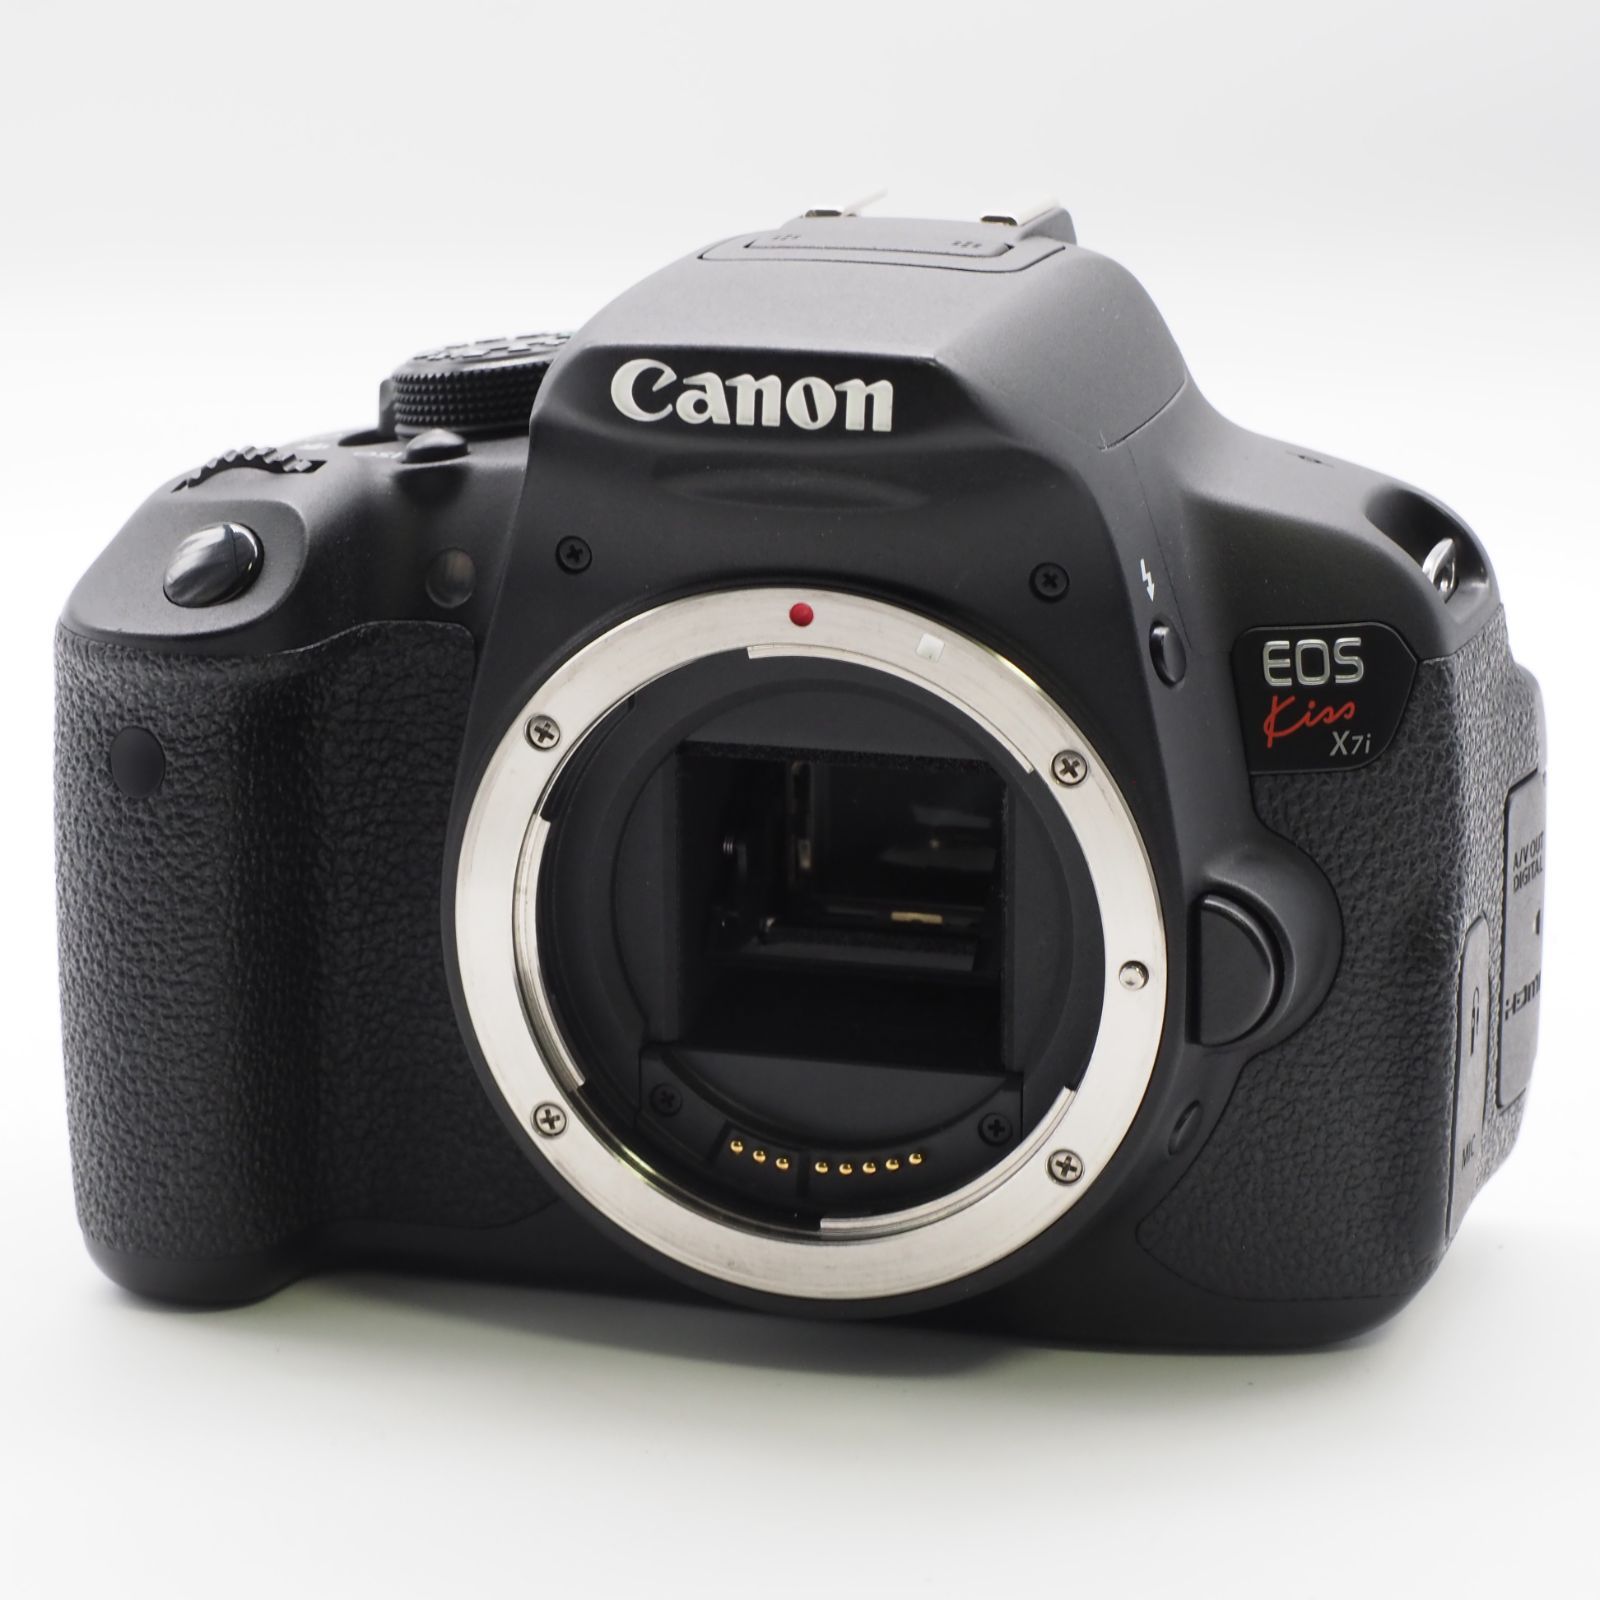 Canon デジタル一眼レフカメラ EOS Kiss X7i ボディー KISSX7I-BODY-